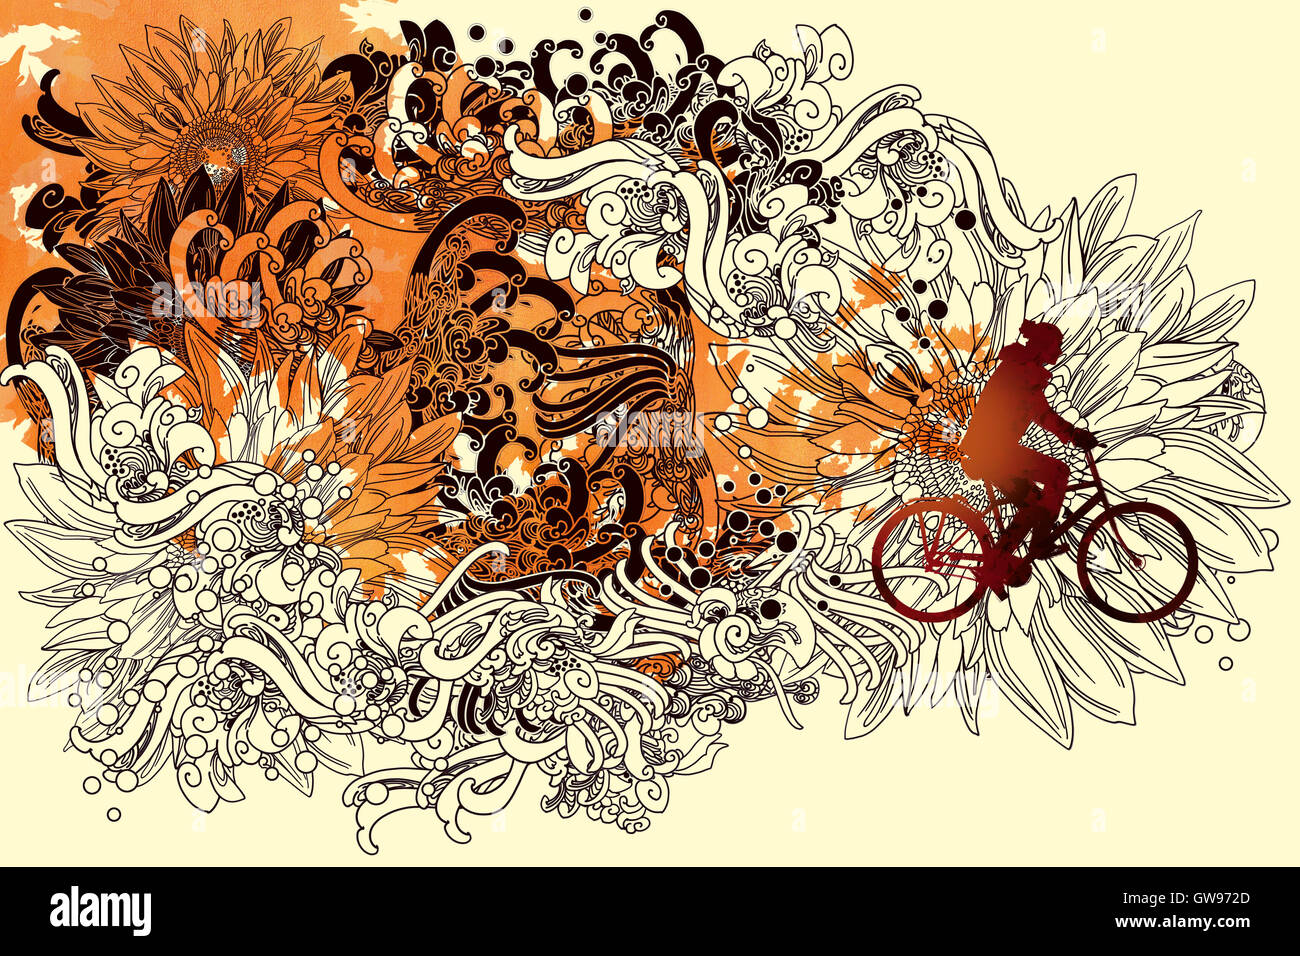 Abstraite automne floral art concept avec la ligne et l'homme de conduire une bicyclette,illustration peinture Banque D'Images